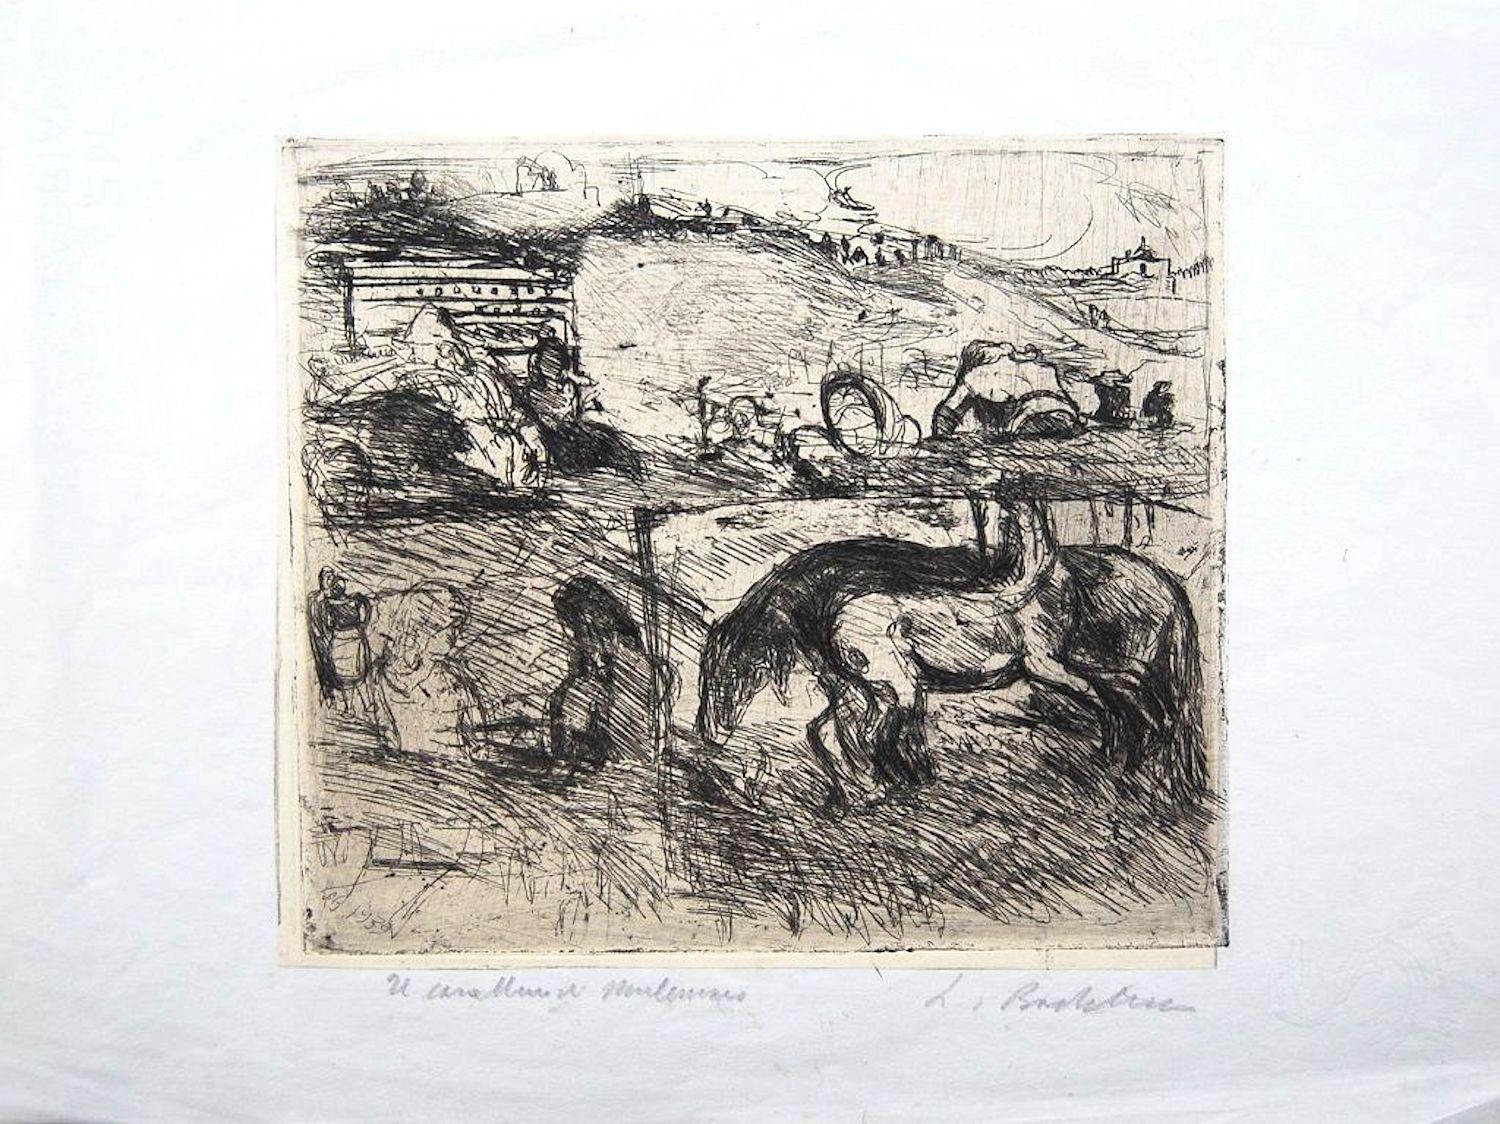 Il Cavallaro di Montemario ist ein Originalkunstwerk des italienischen Künstlers und Graveurs Luigi Bartolini aus dem Jahr 1939.

Original-Radierung auf Porzellanpapier, aufgetragen auf Neptunia-Blatt.

Abmessungen des Bildes: 22.5 x 25,5